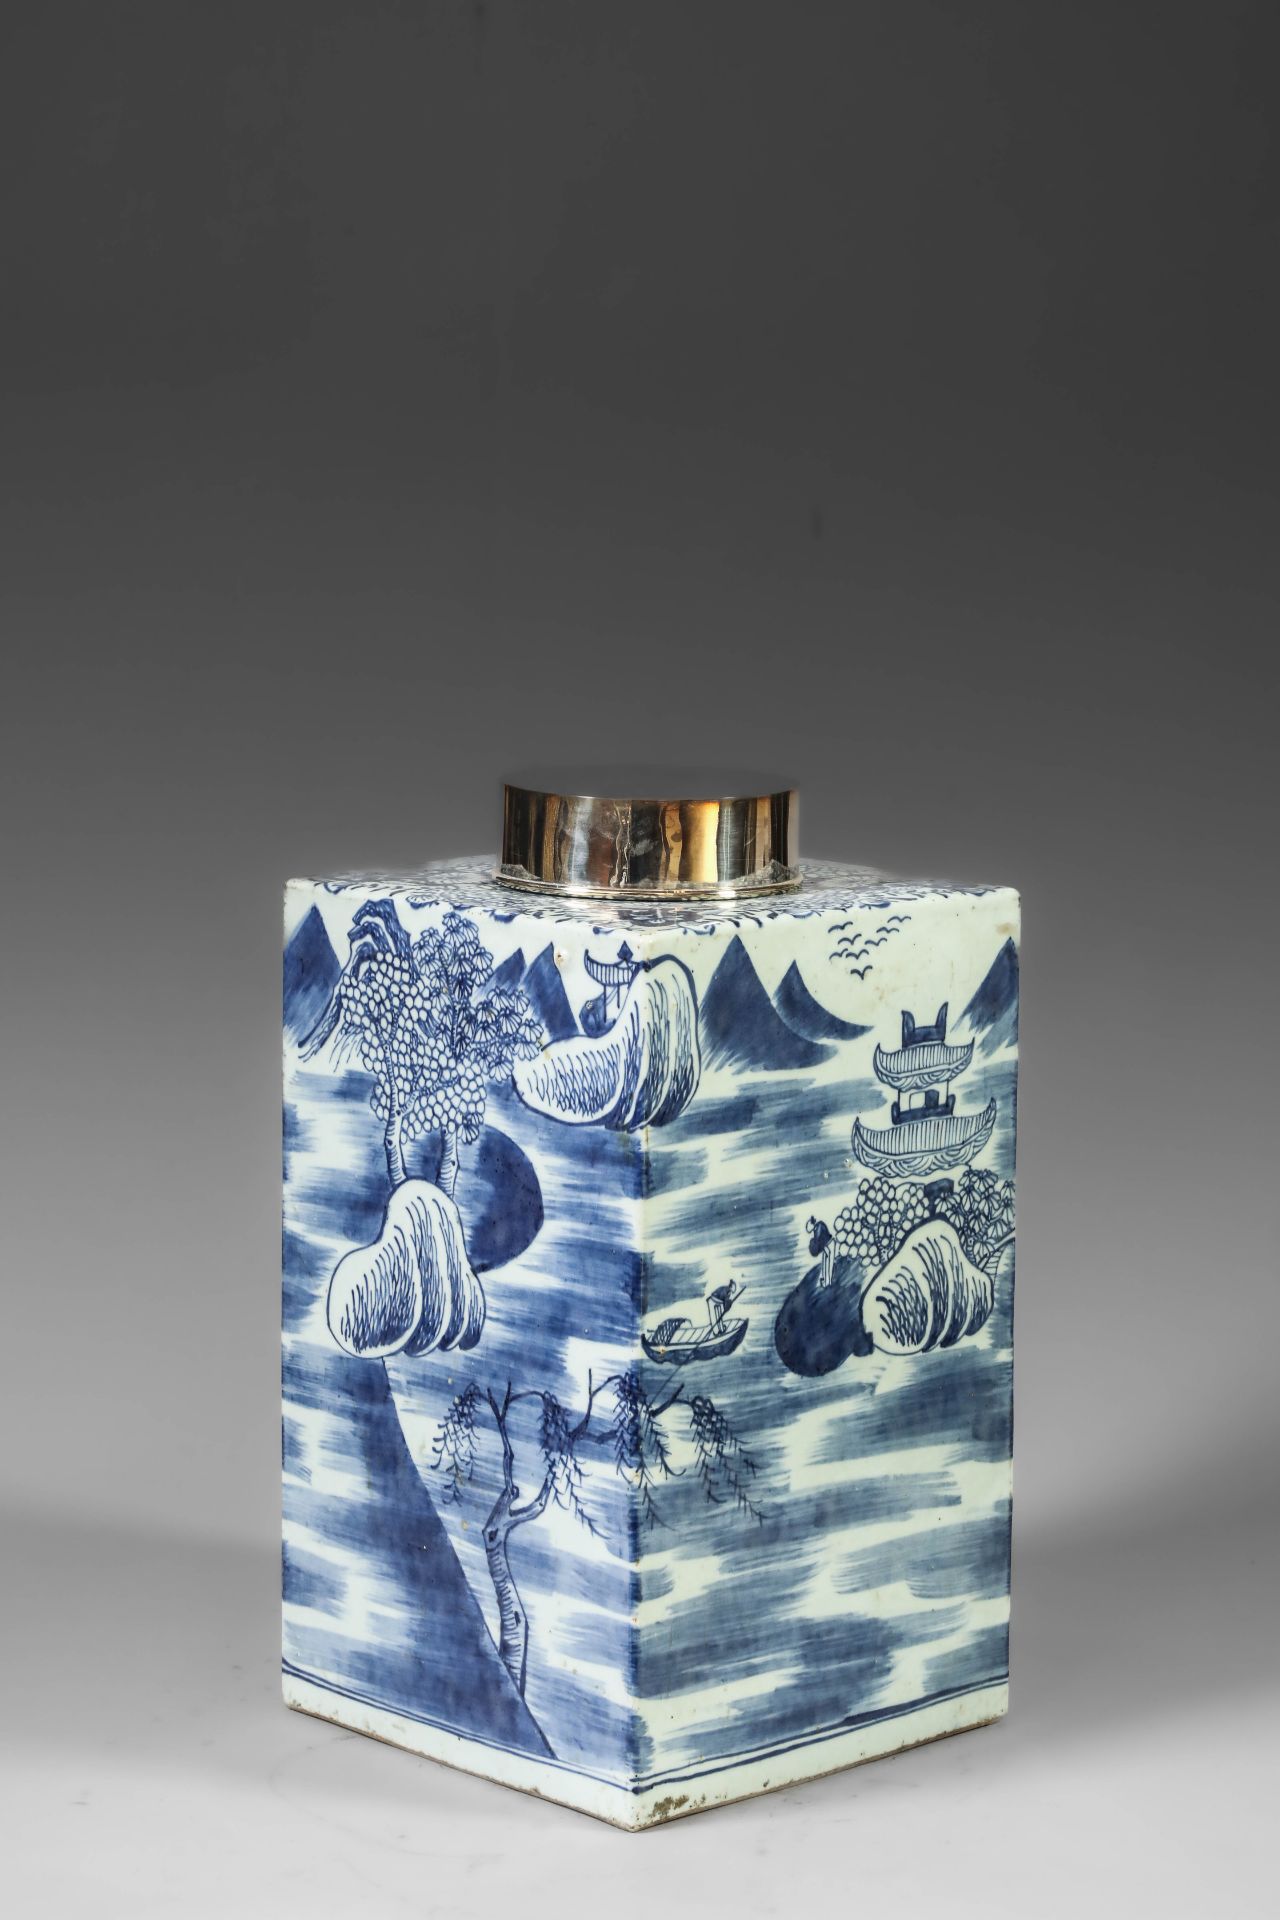 Suite de neuf pots à thé quadrangulaire en porcelaine blanche décoré en bleu sous couverte de - Image 27 of 47